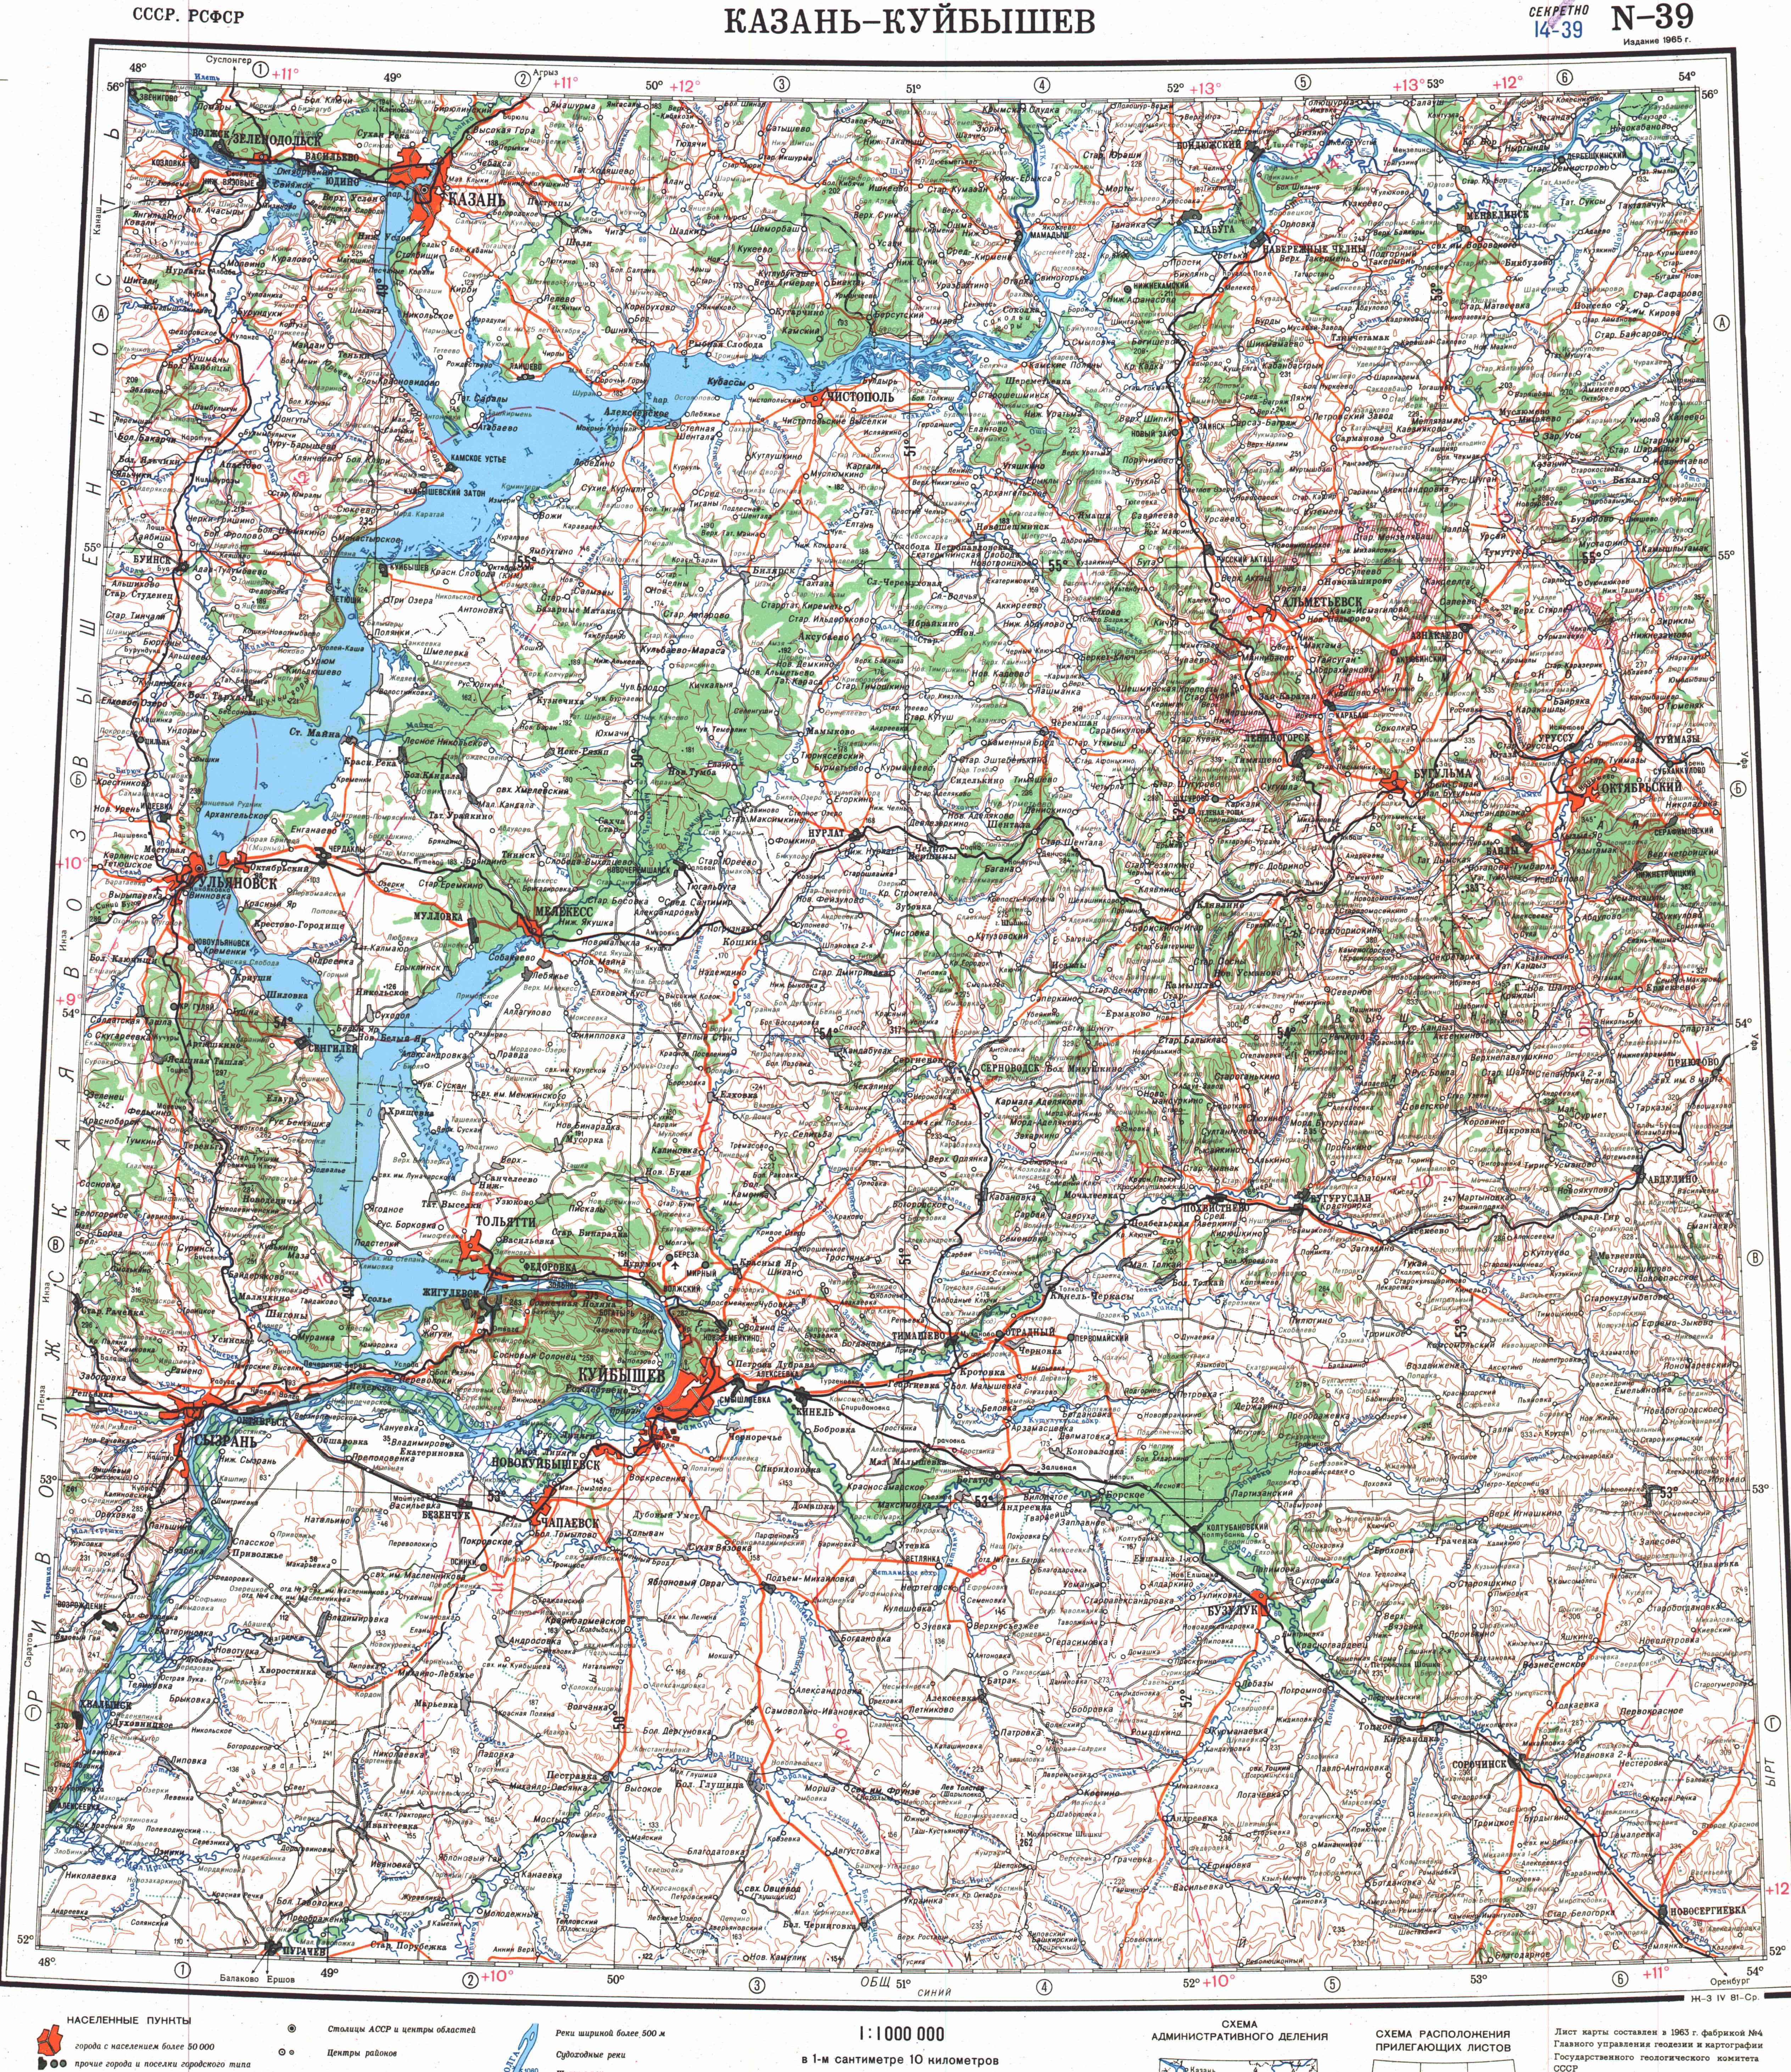 Топографические карты Генштаба / Карты листа N-39 (Самара) / Карта масштаба 1:1000000 (десятикилометровка)